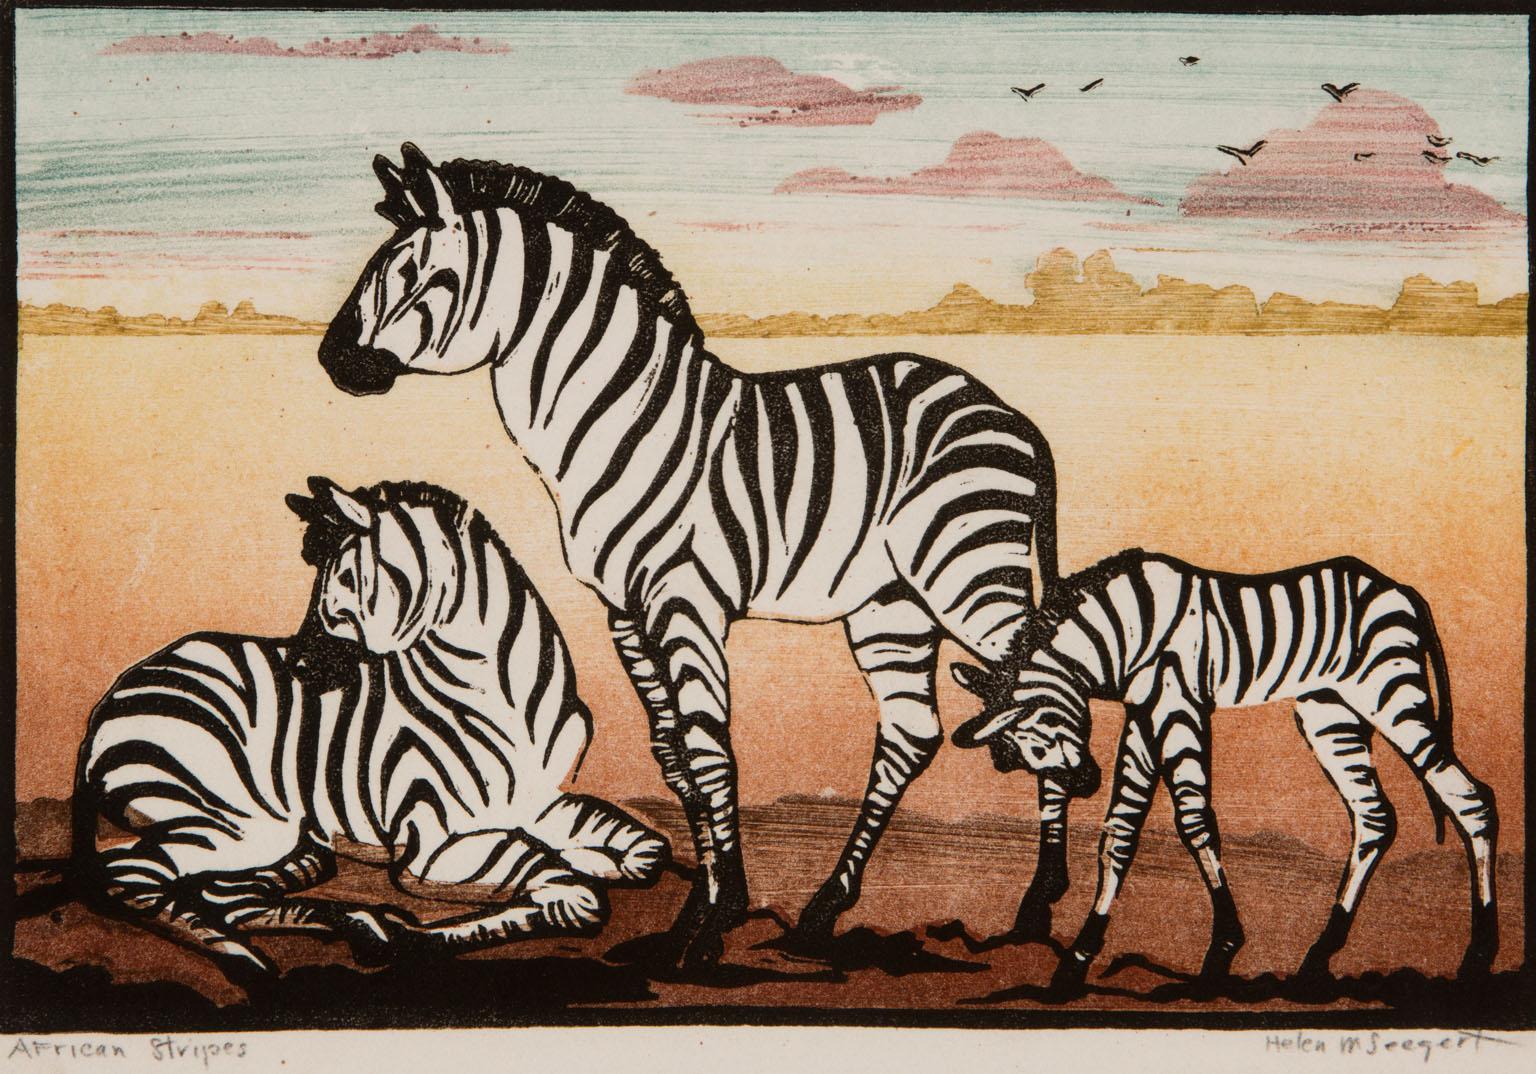 Helen M. Seegert Animal Print - African Stripes